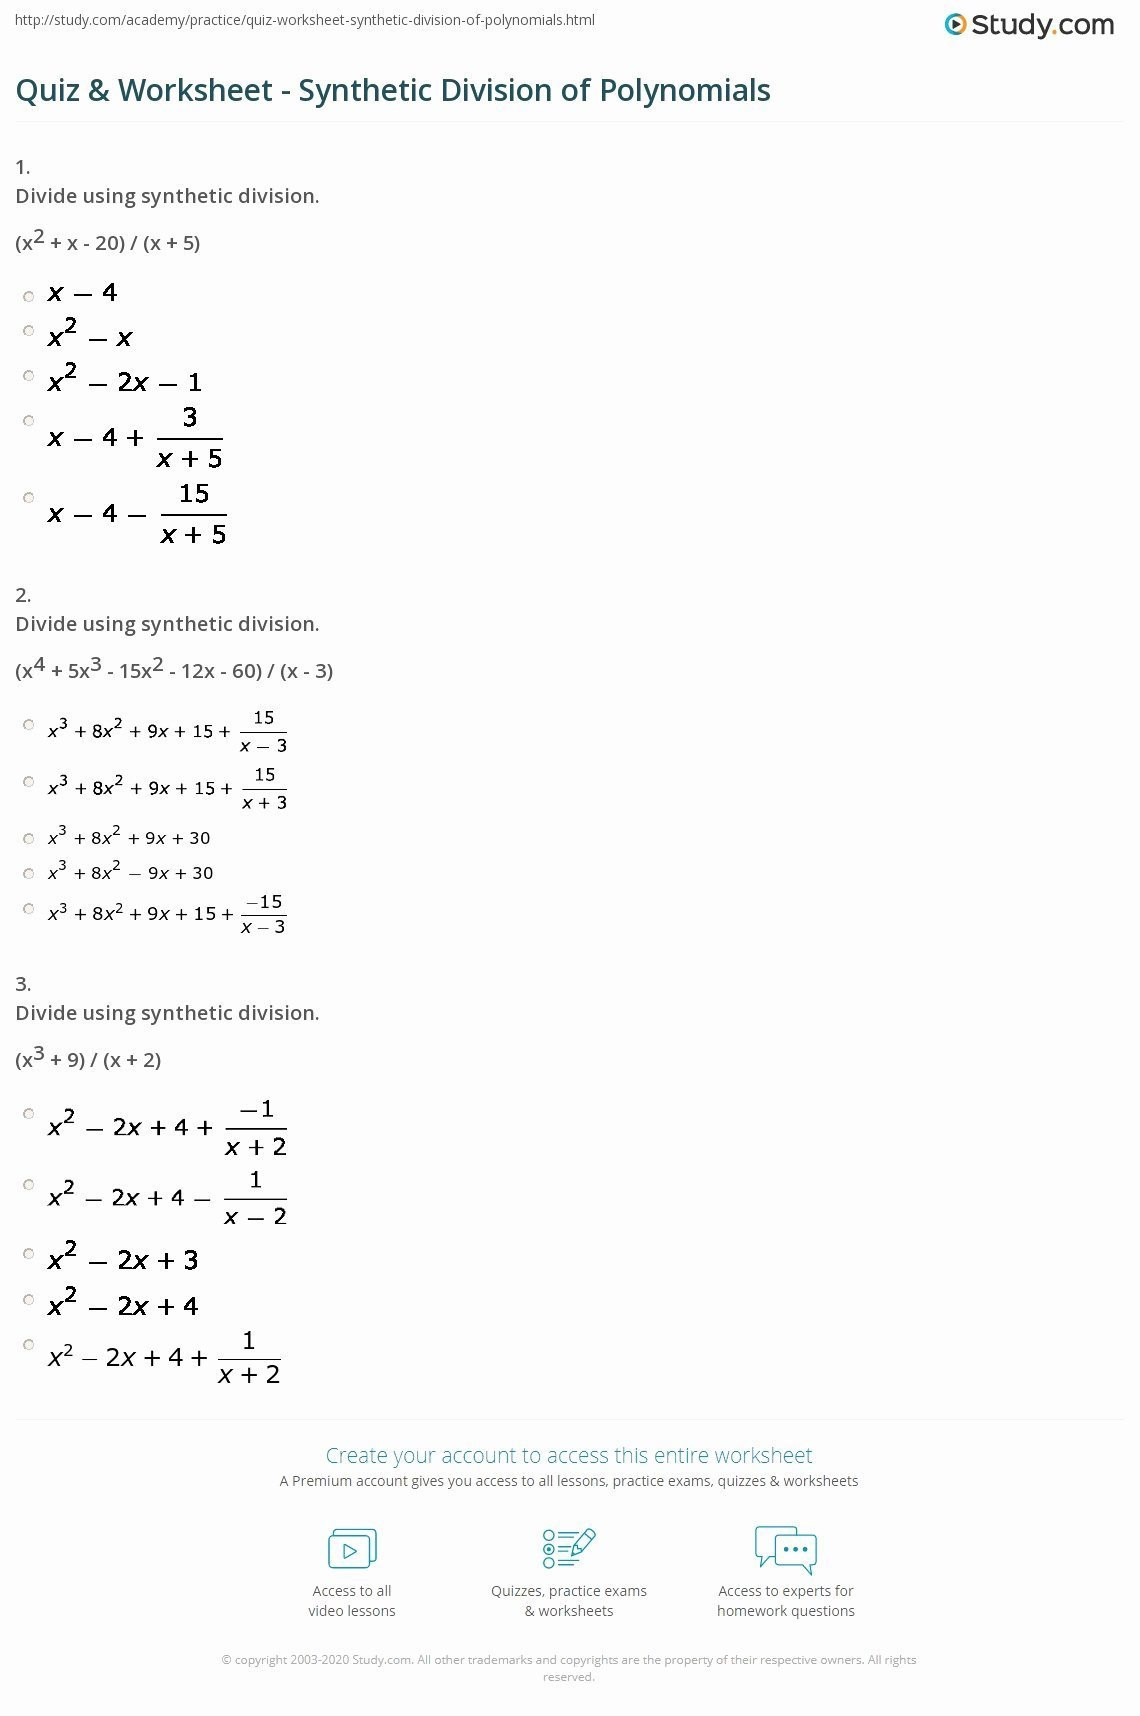 Long Division Polynomials Worksheet Polynomial Long Division Worksheet